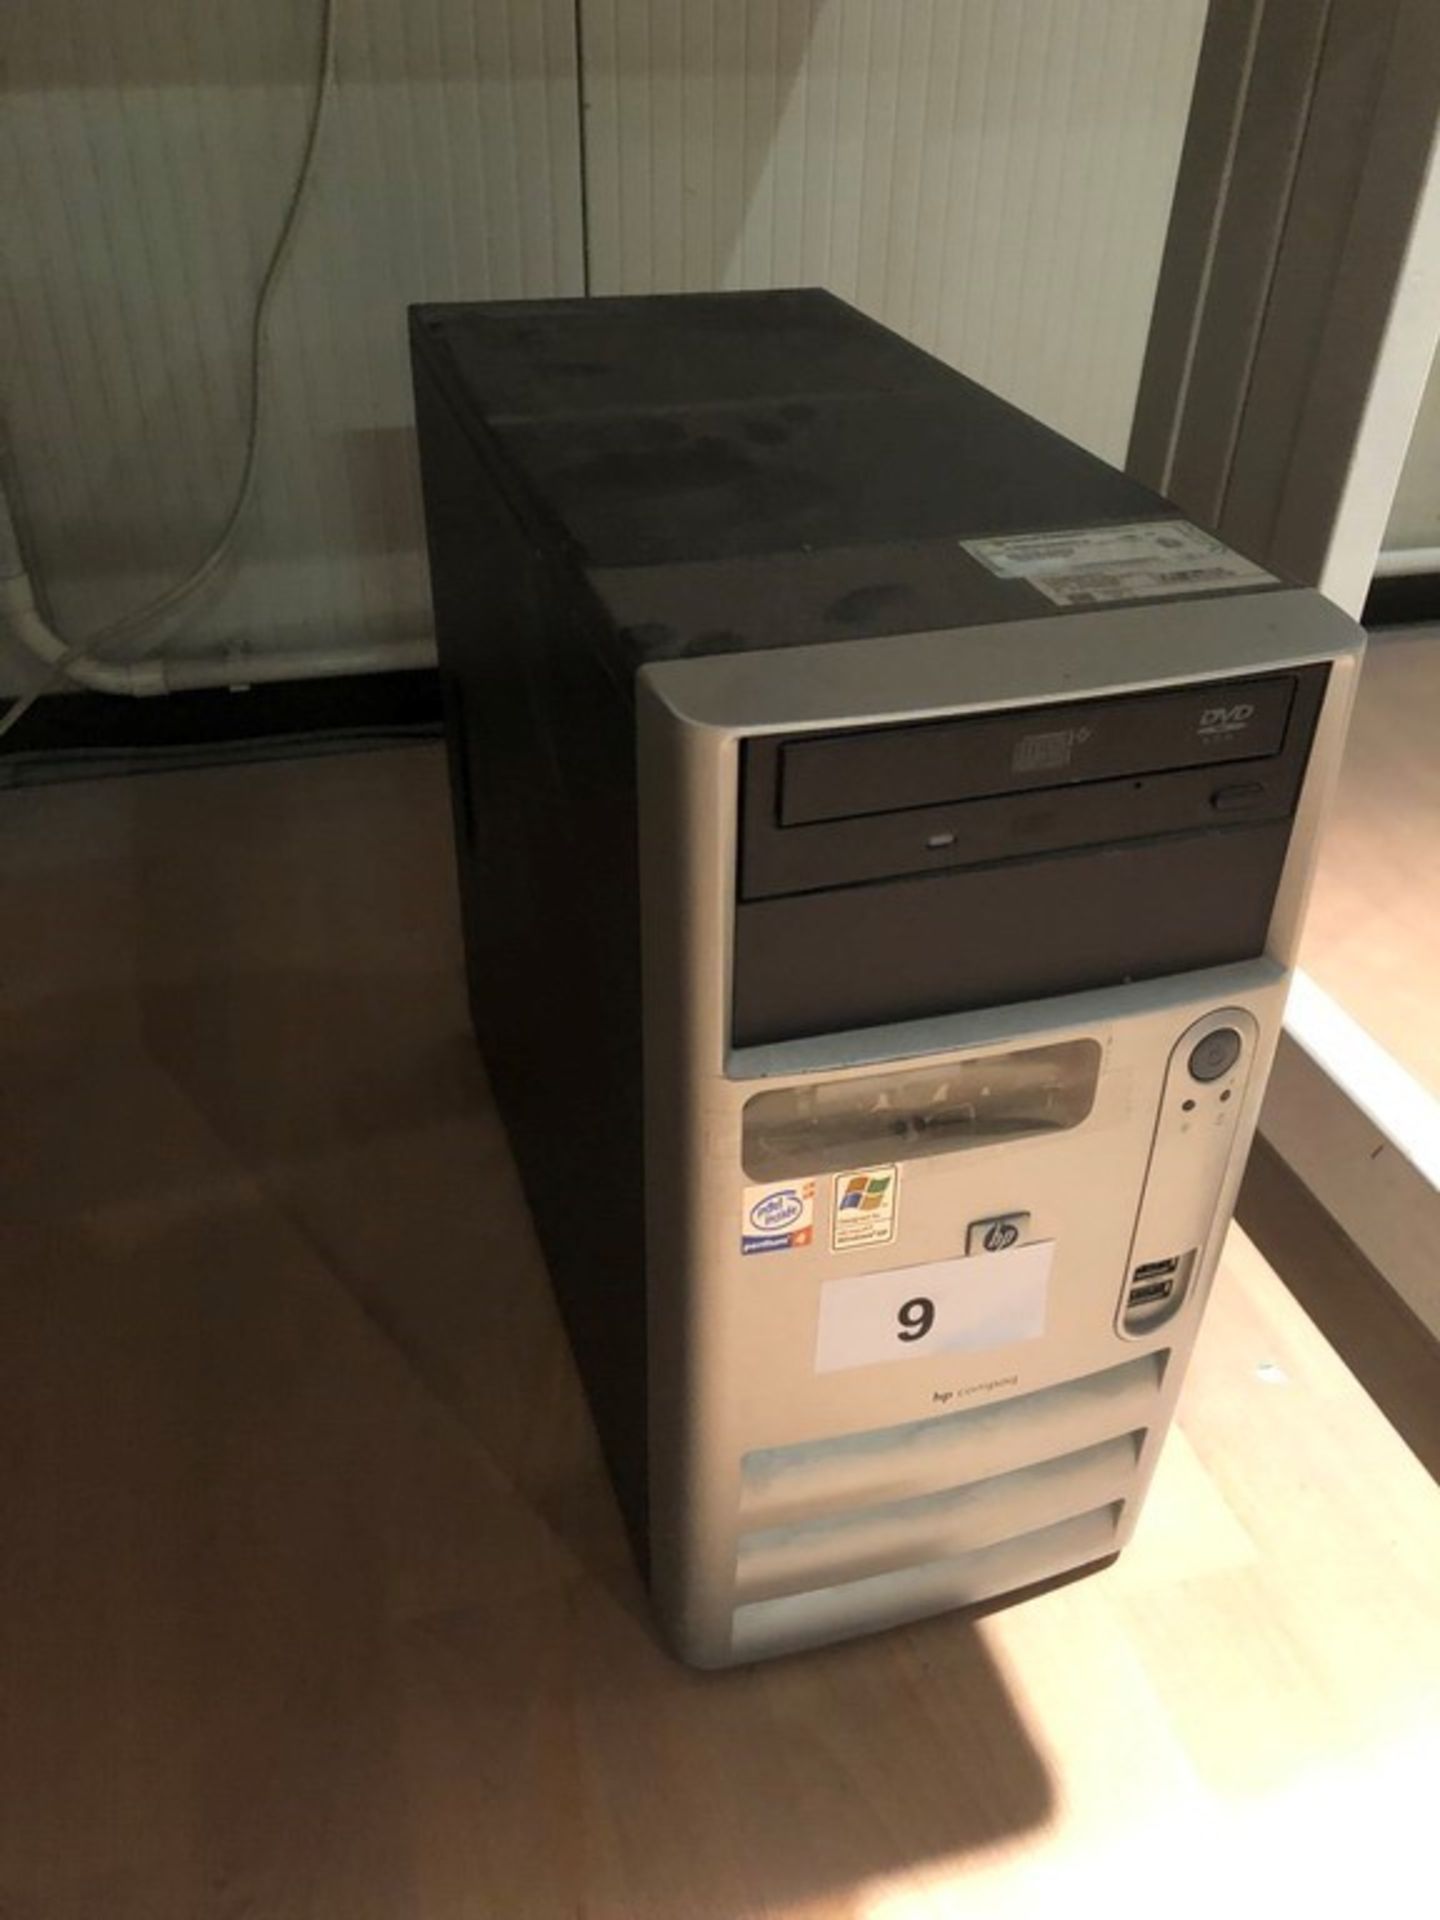 N. 9 (FALL. N. 74/19 VR) PC HP COMPACT